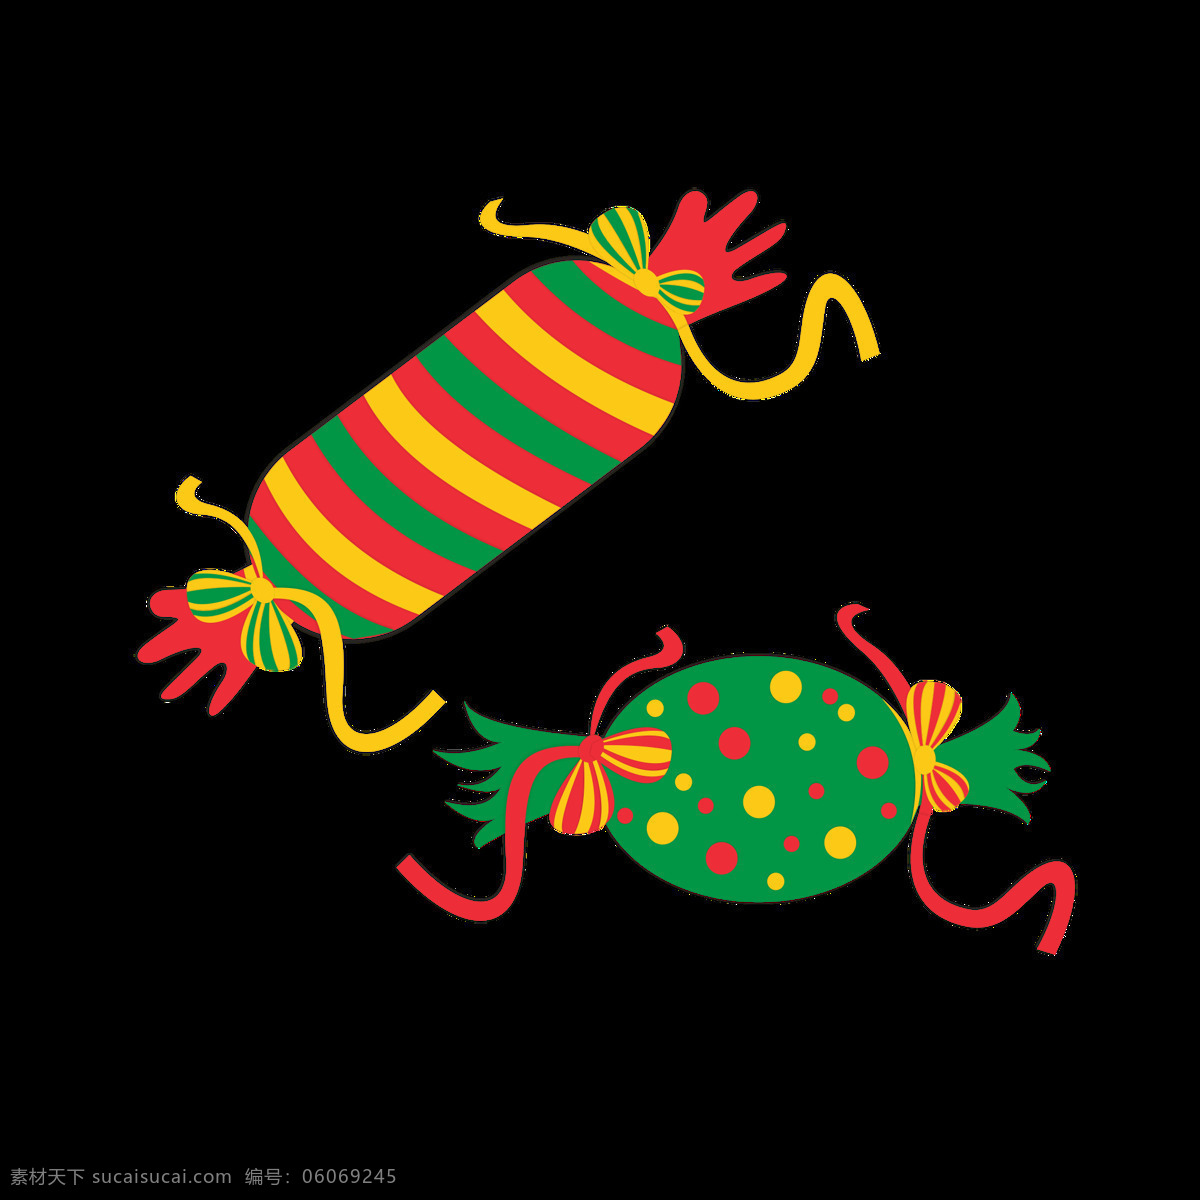 圣诞节 元素 卡通 可爱 糖果 装饰 礼物 元素设计